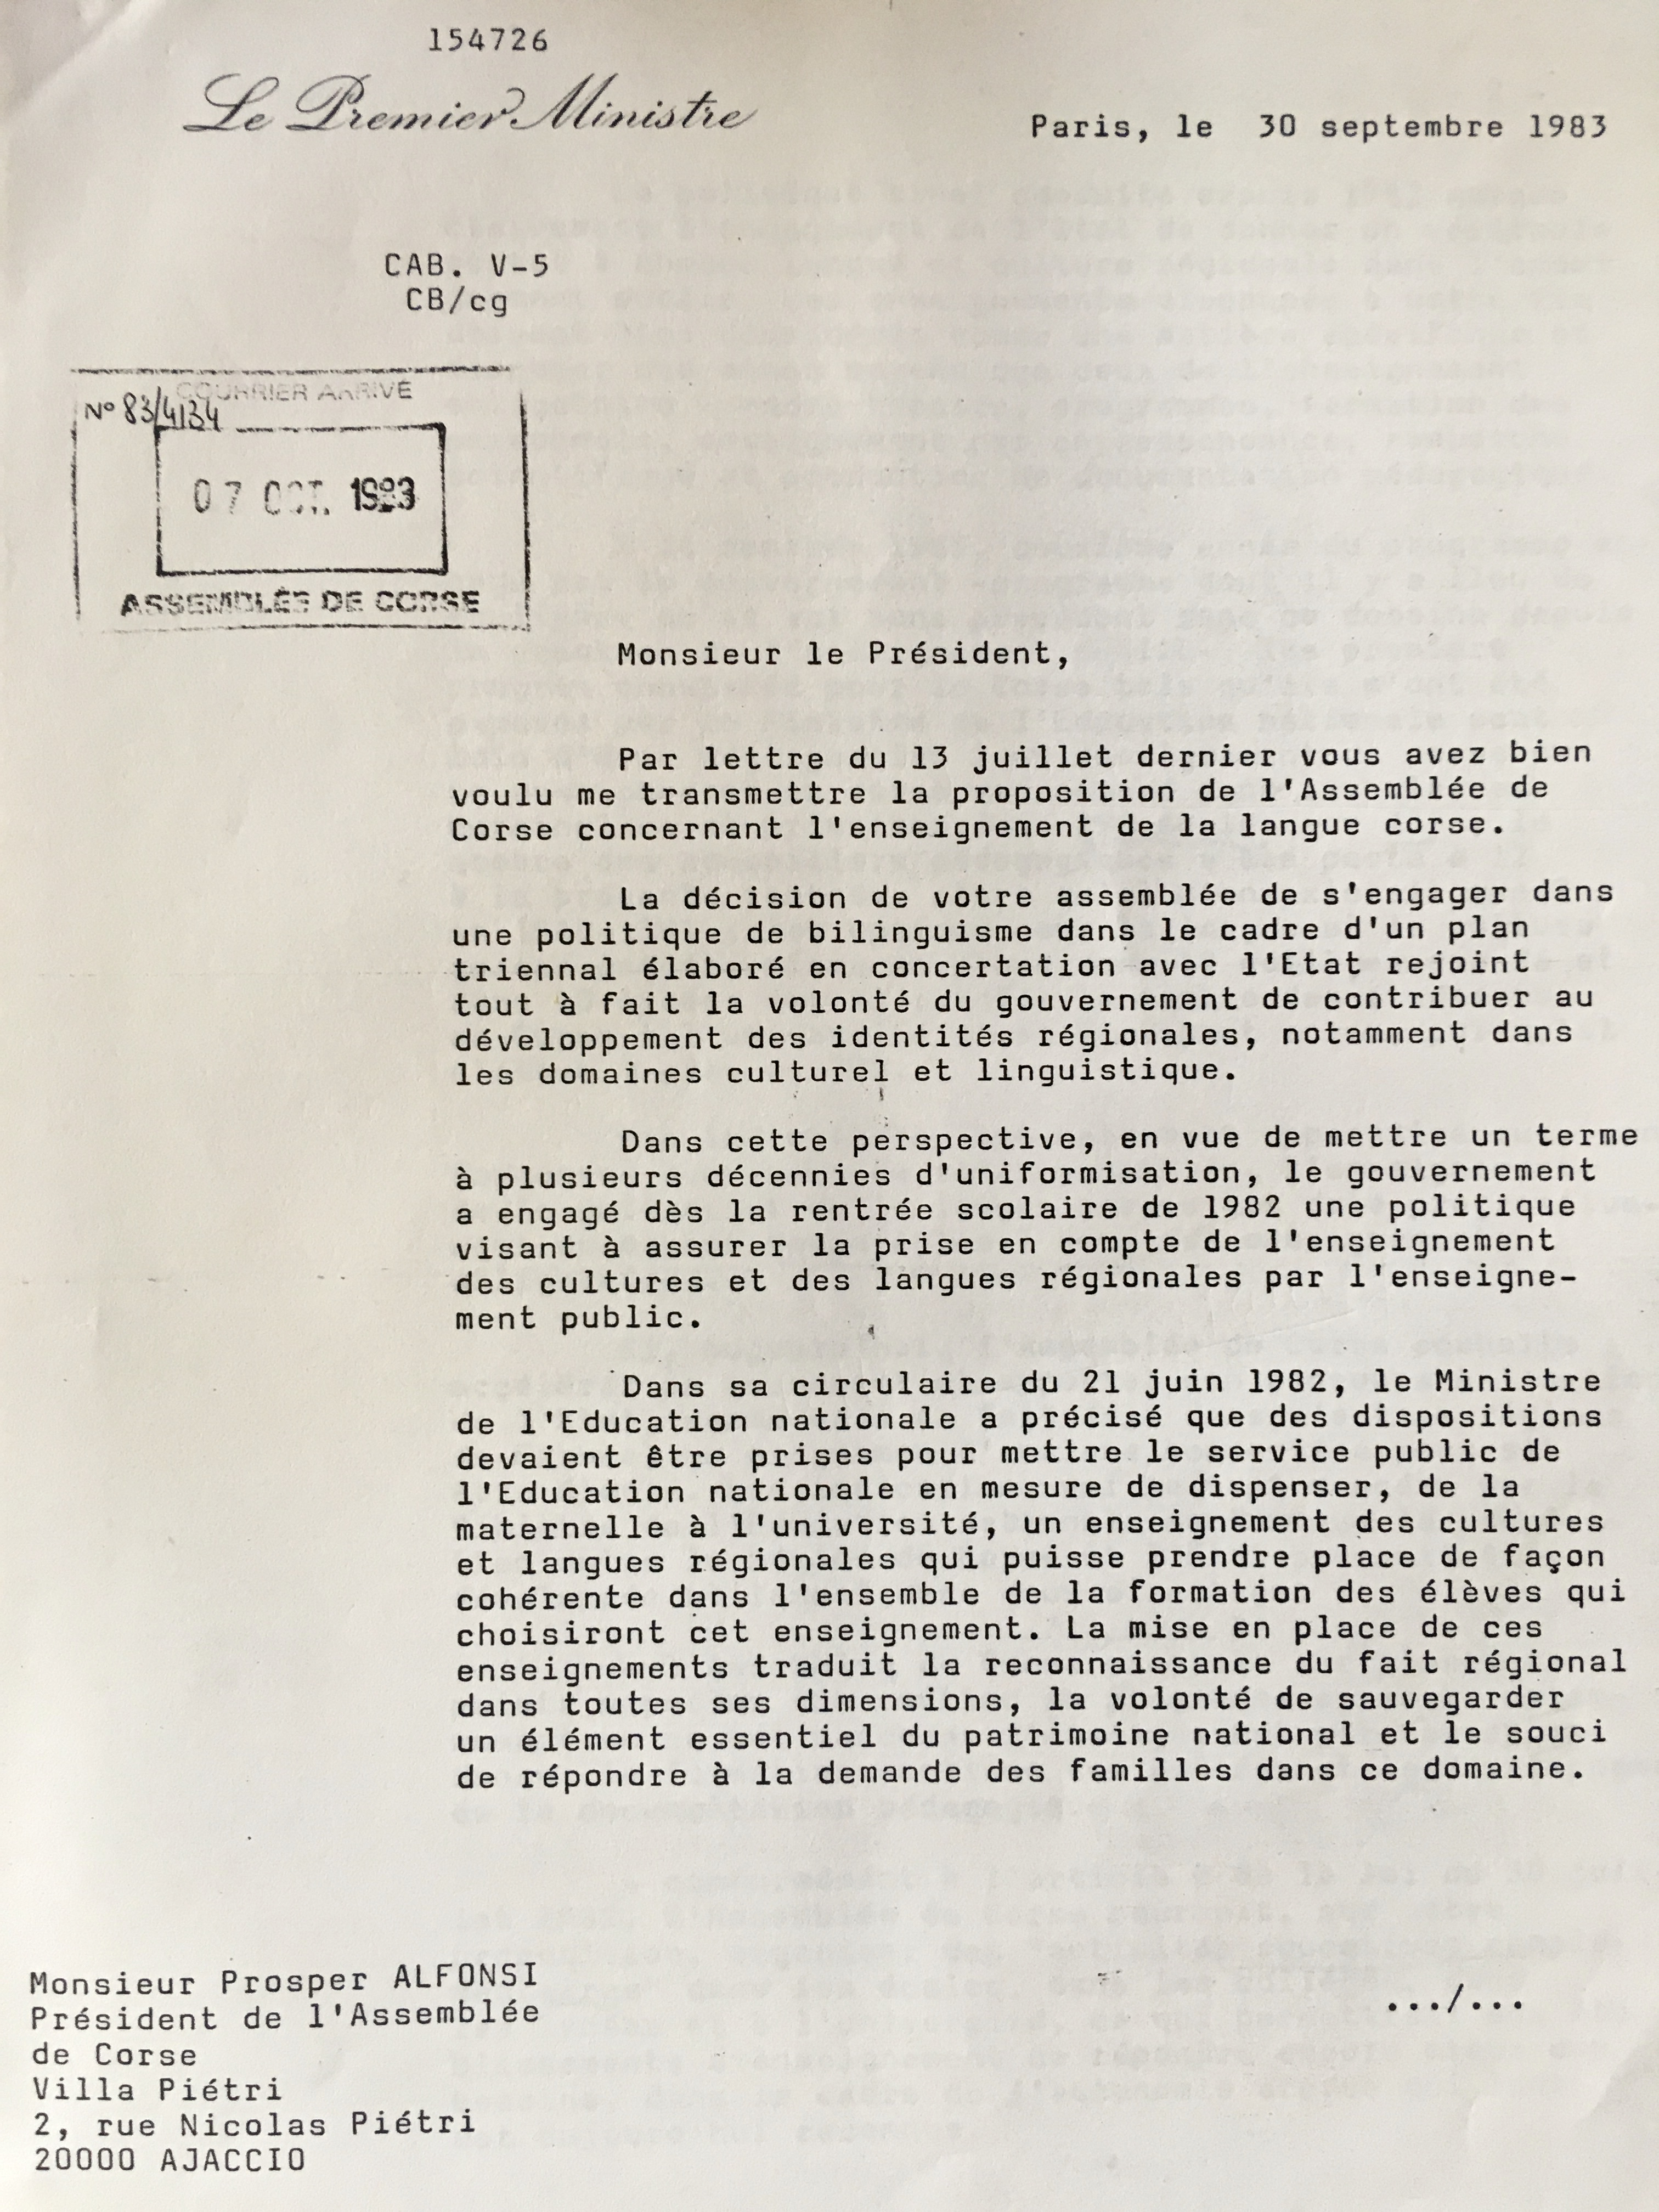 Réponse du gouvernement français aux demandes linguistiques de l'Assemblée de Corse - 1983